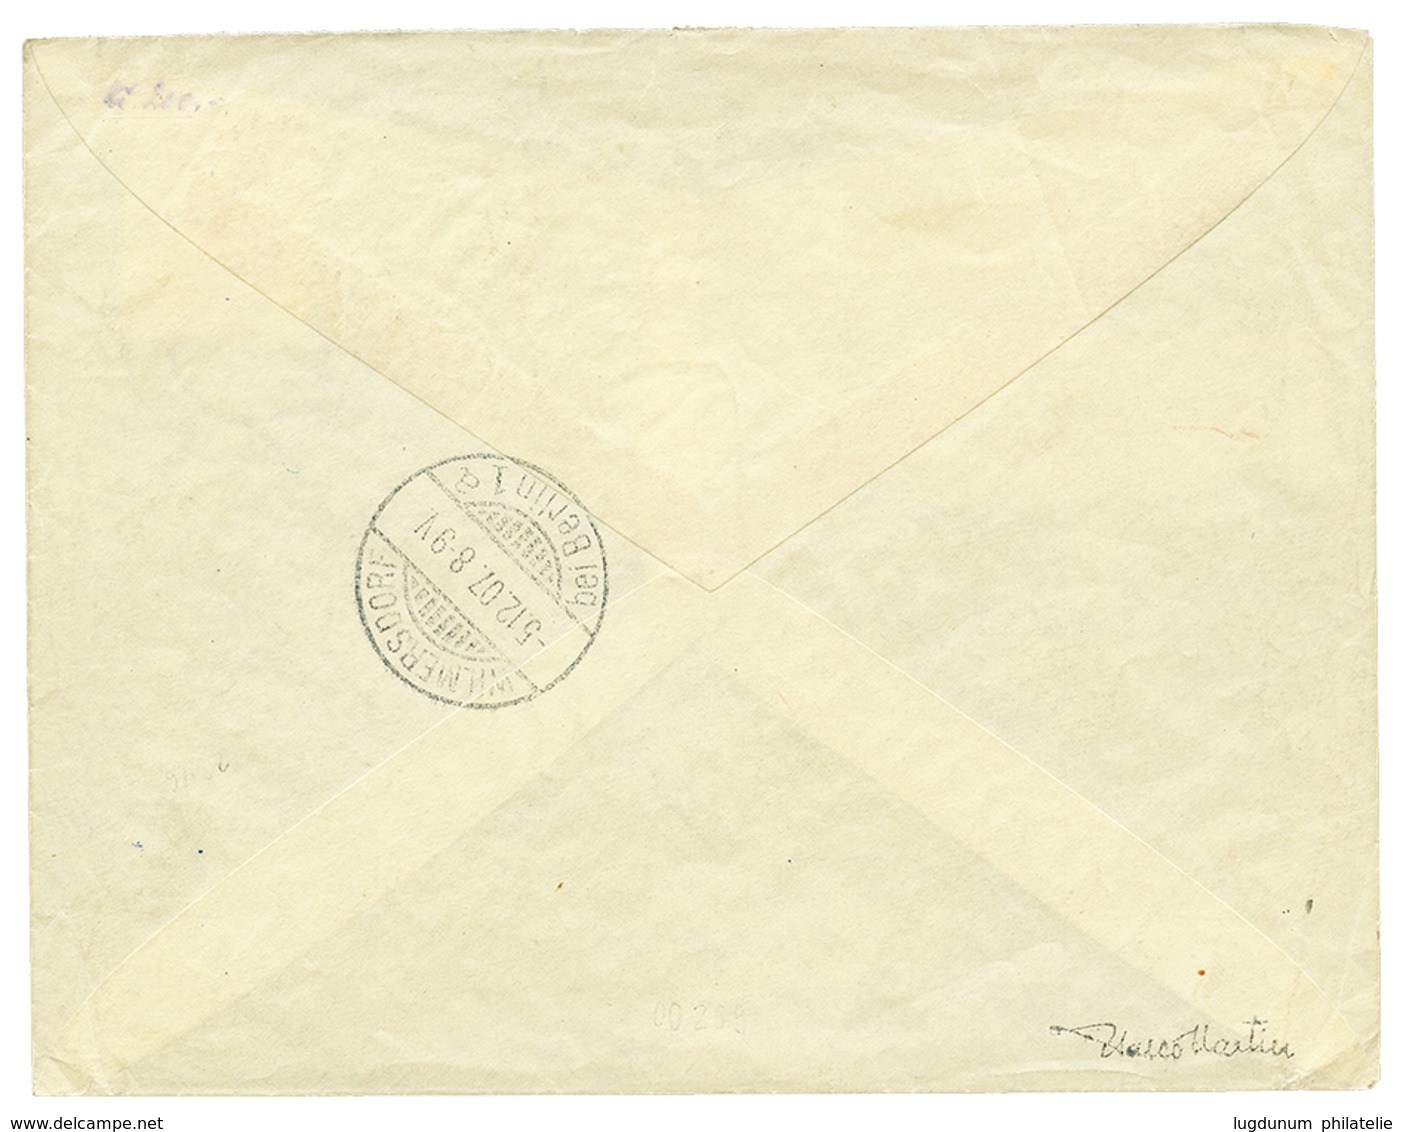 473 "CANEA " : 1907 2 FRANCS Violet Canc. CANEA On REGISTERED Envelope To GERMANY. Superb. - Eastern Austria